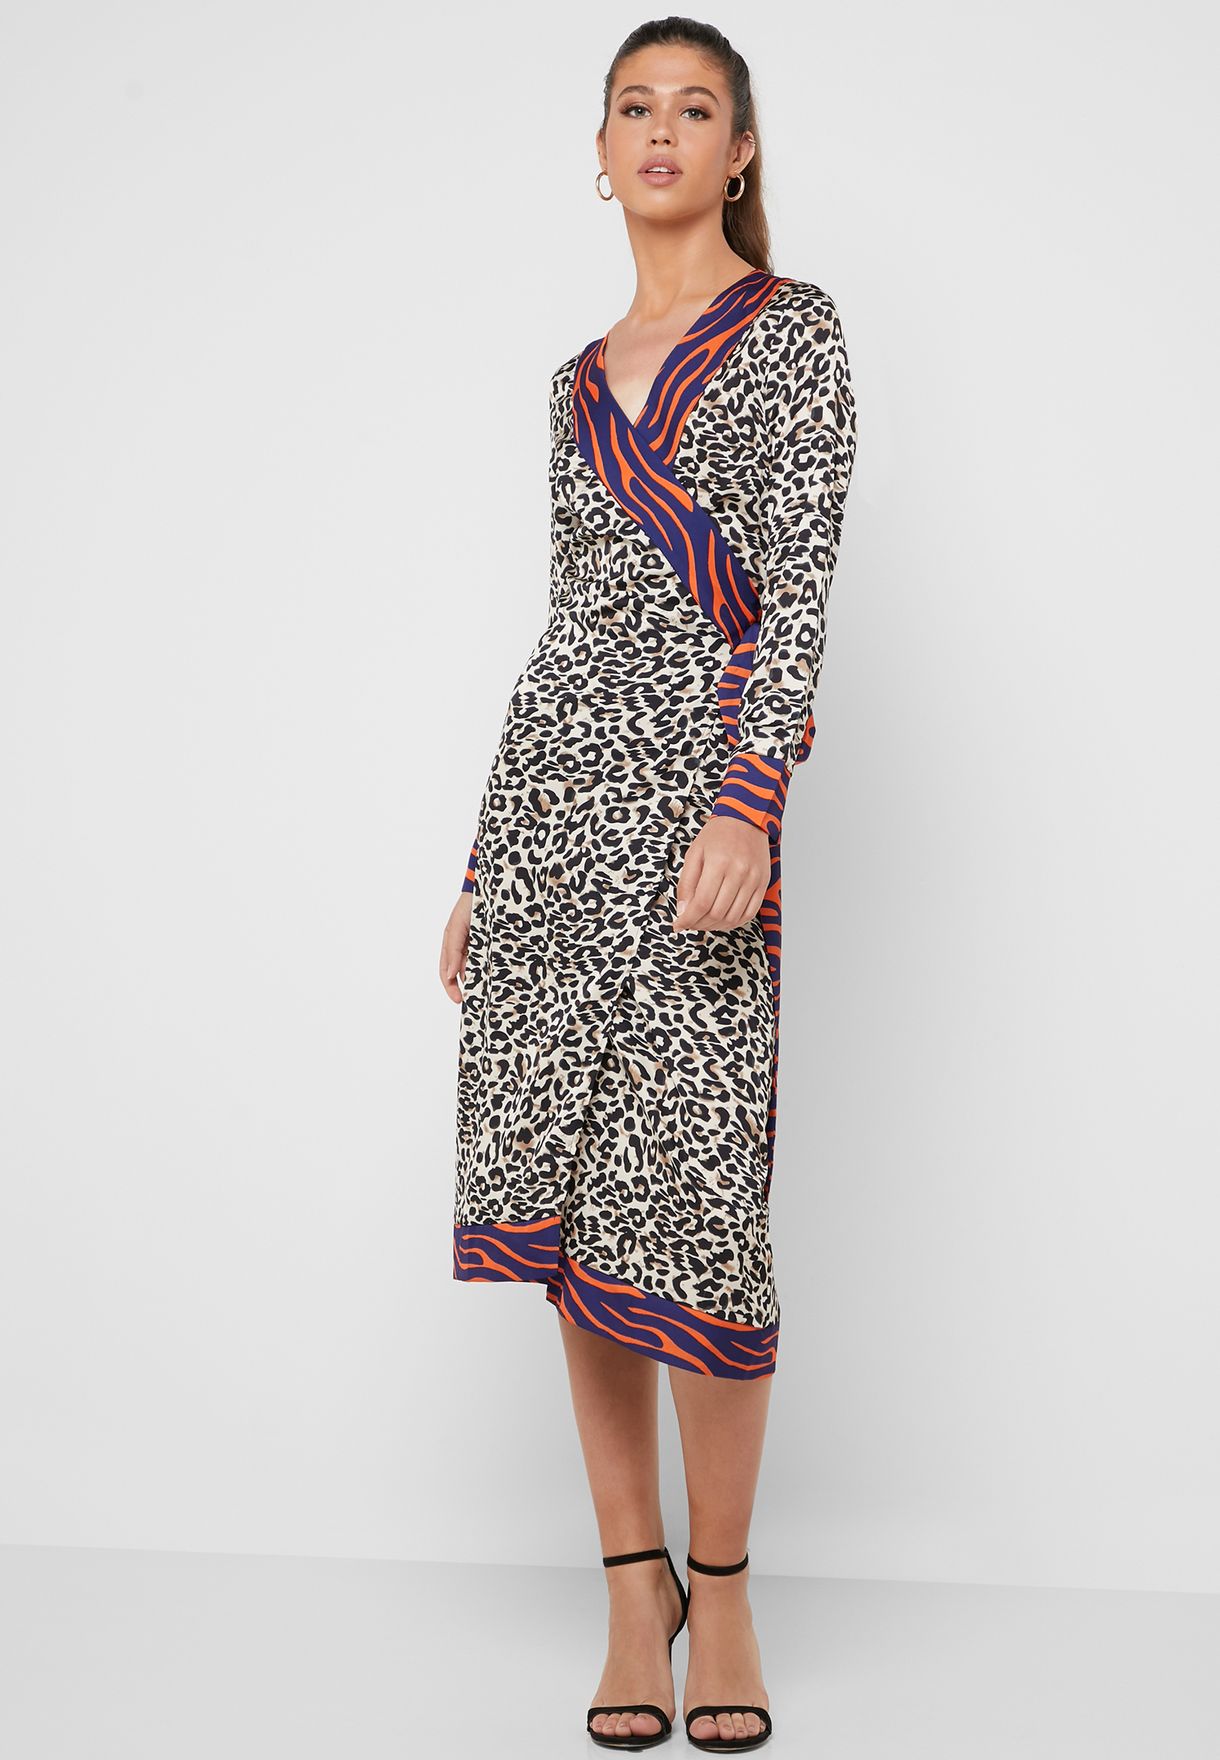 Fully Dressed Leopard Dress Outlet Sale ...